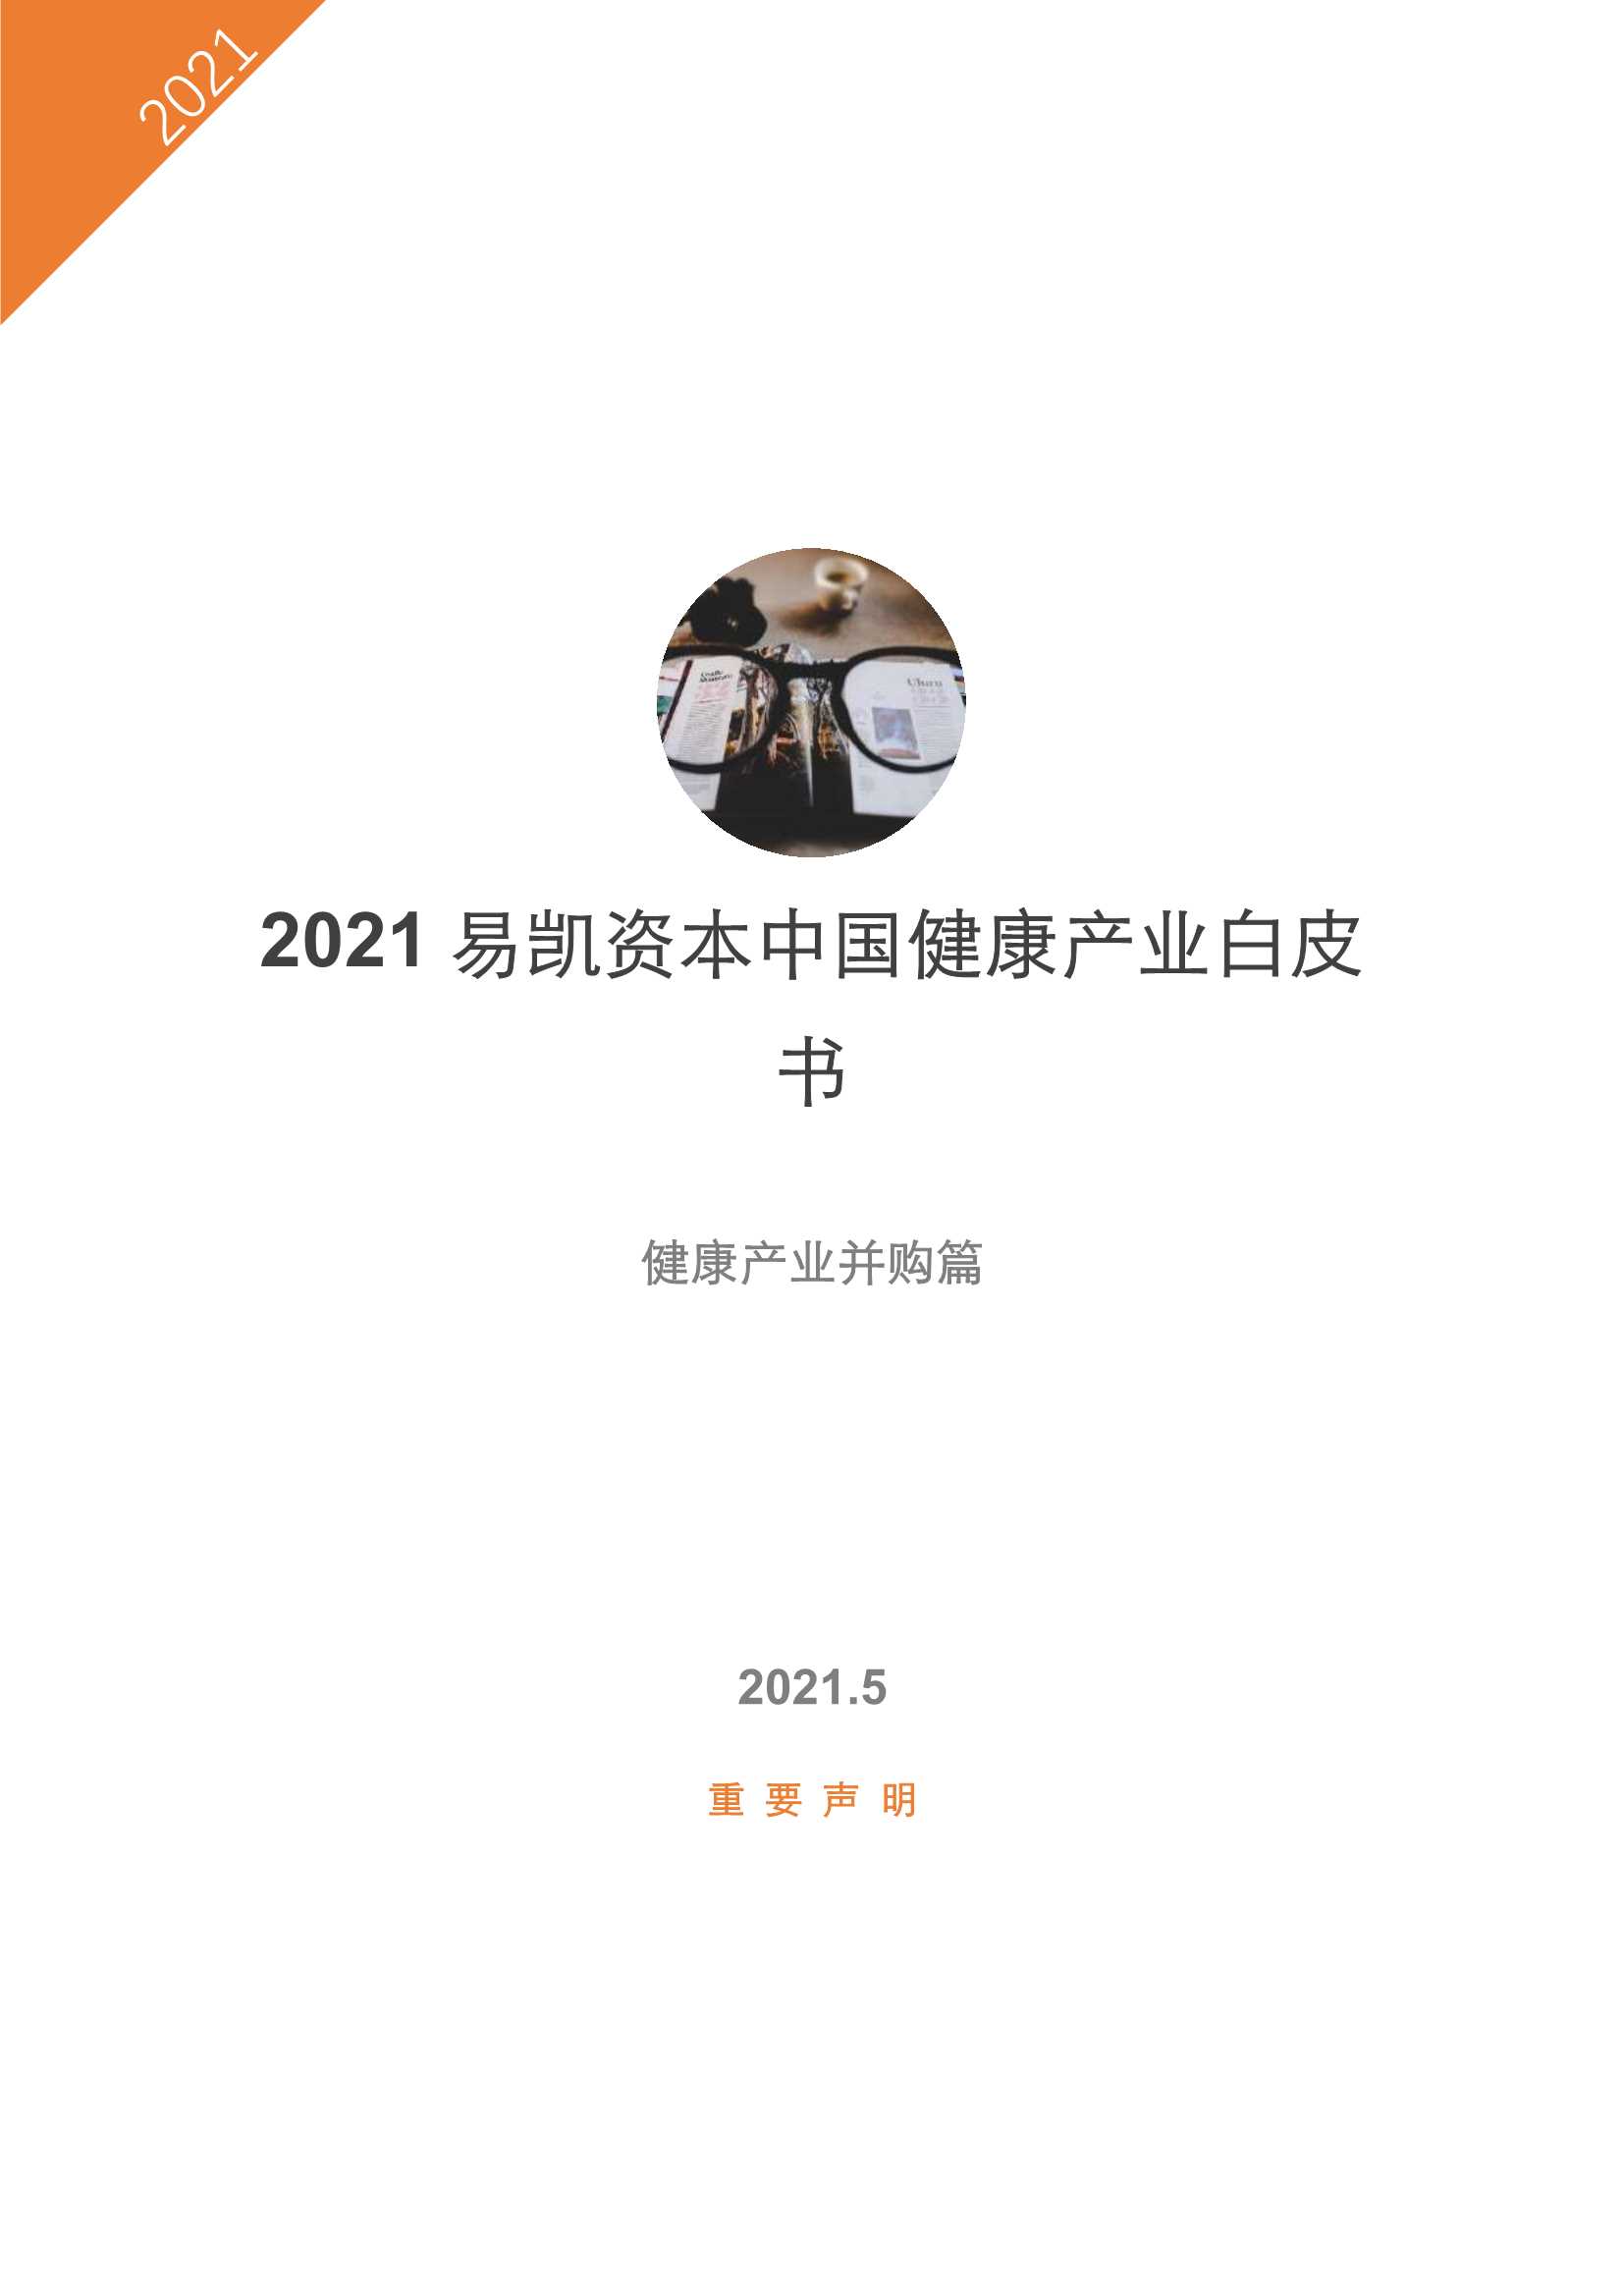 易凯资本-2021中国健康产业白皮书—健康产业并购篇-2021.05-23页